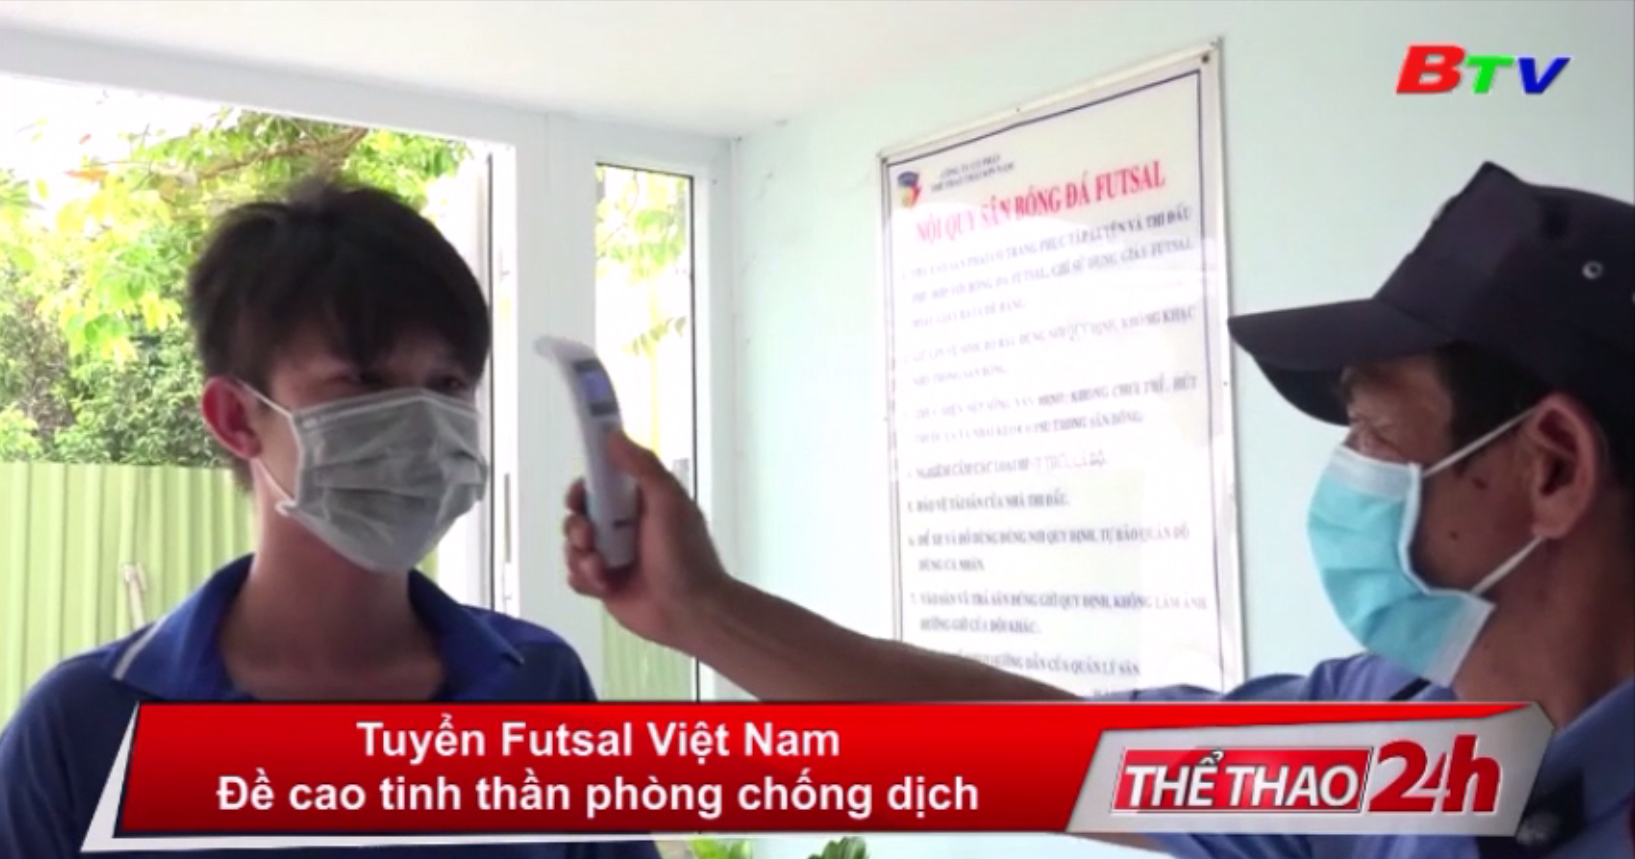 Tuyển Futsal Việt Nam đề cao tinh thần phòng chống dịch